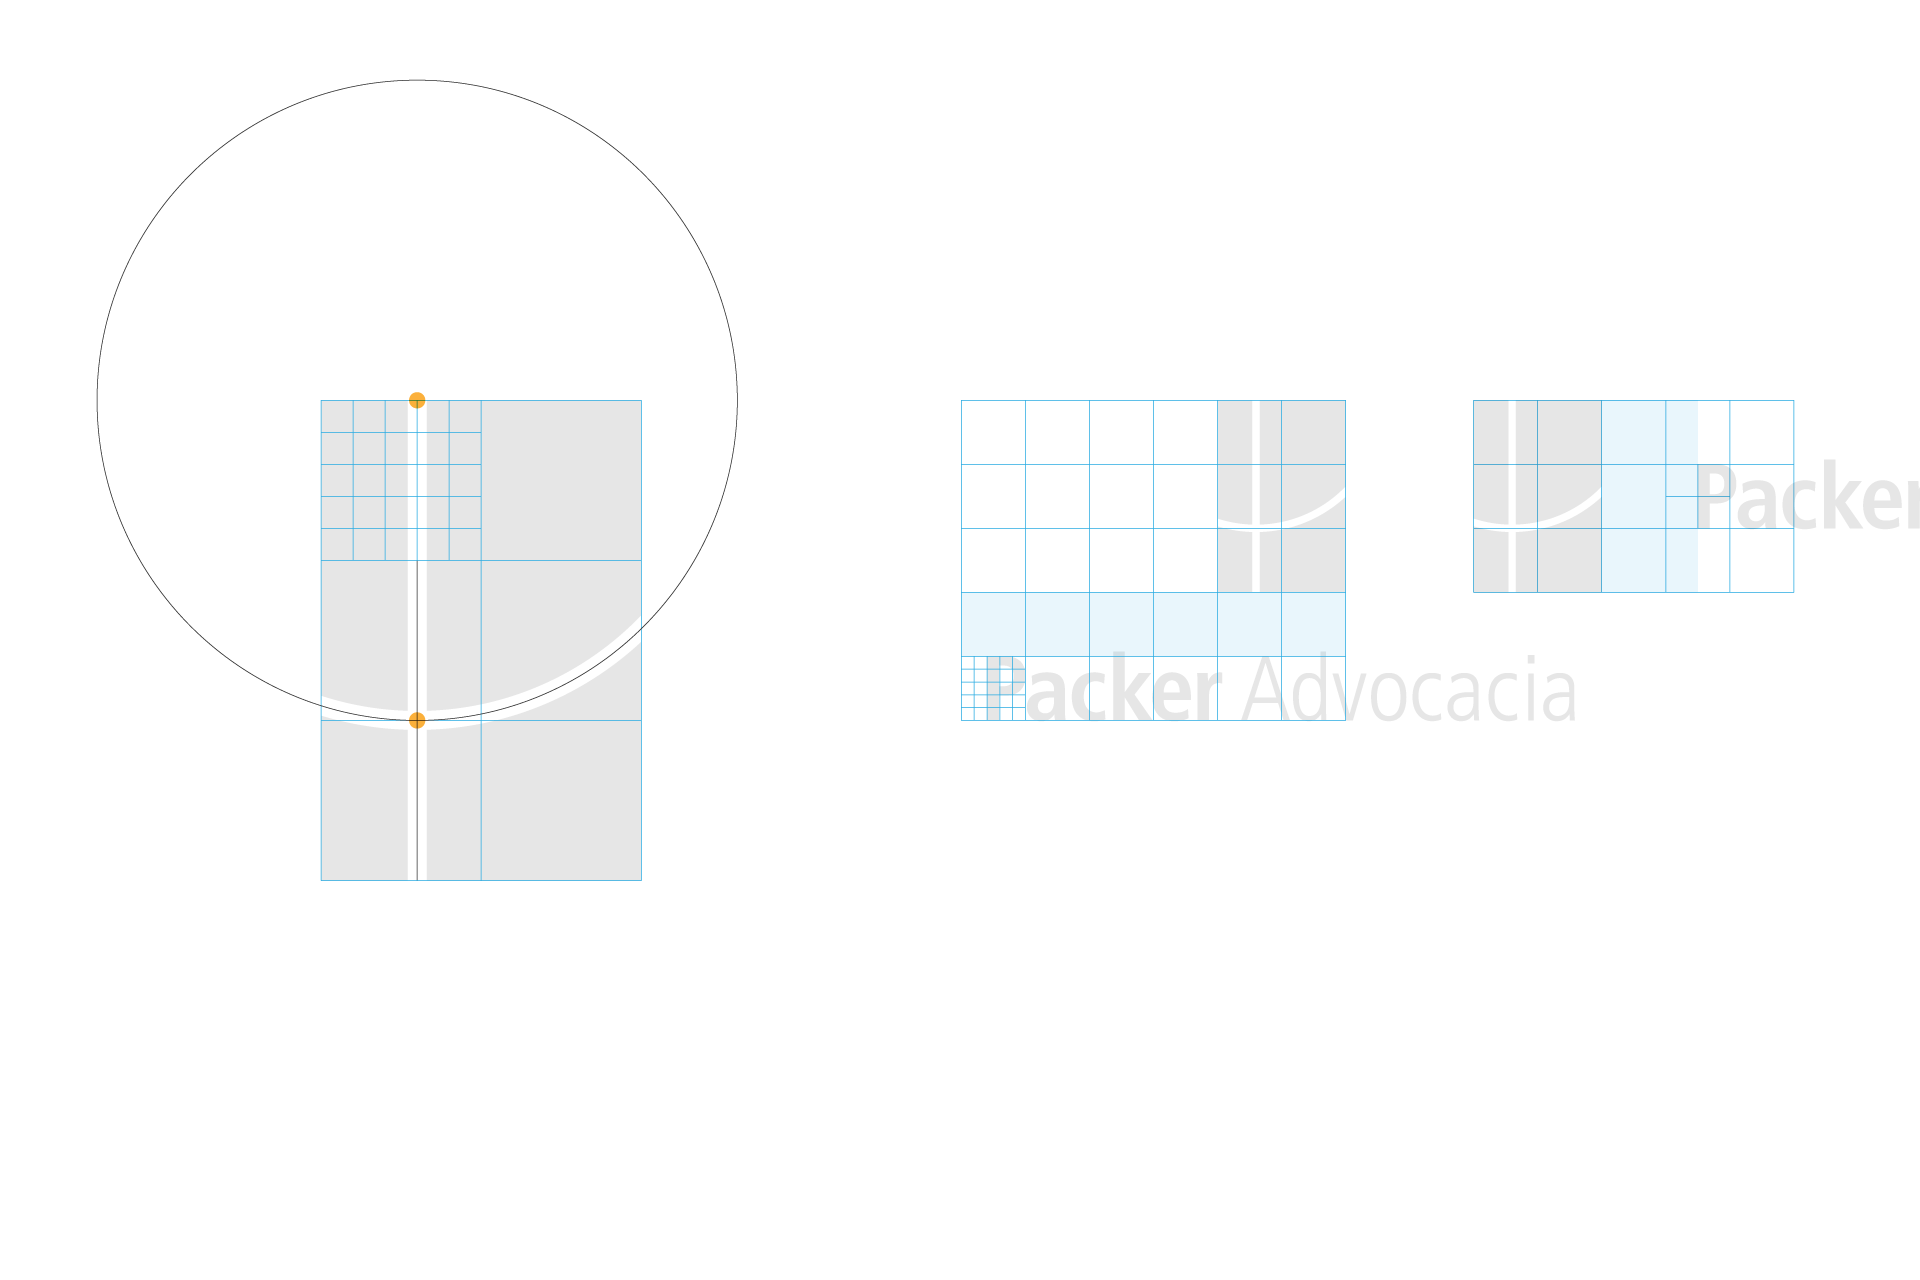 Grid design do logo Packer Advocacia